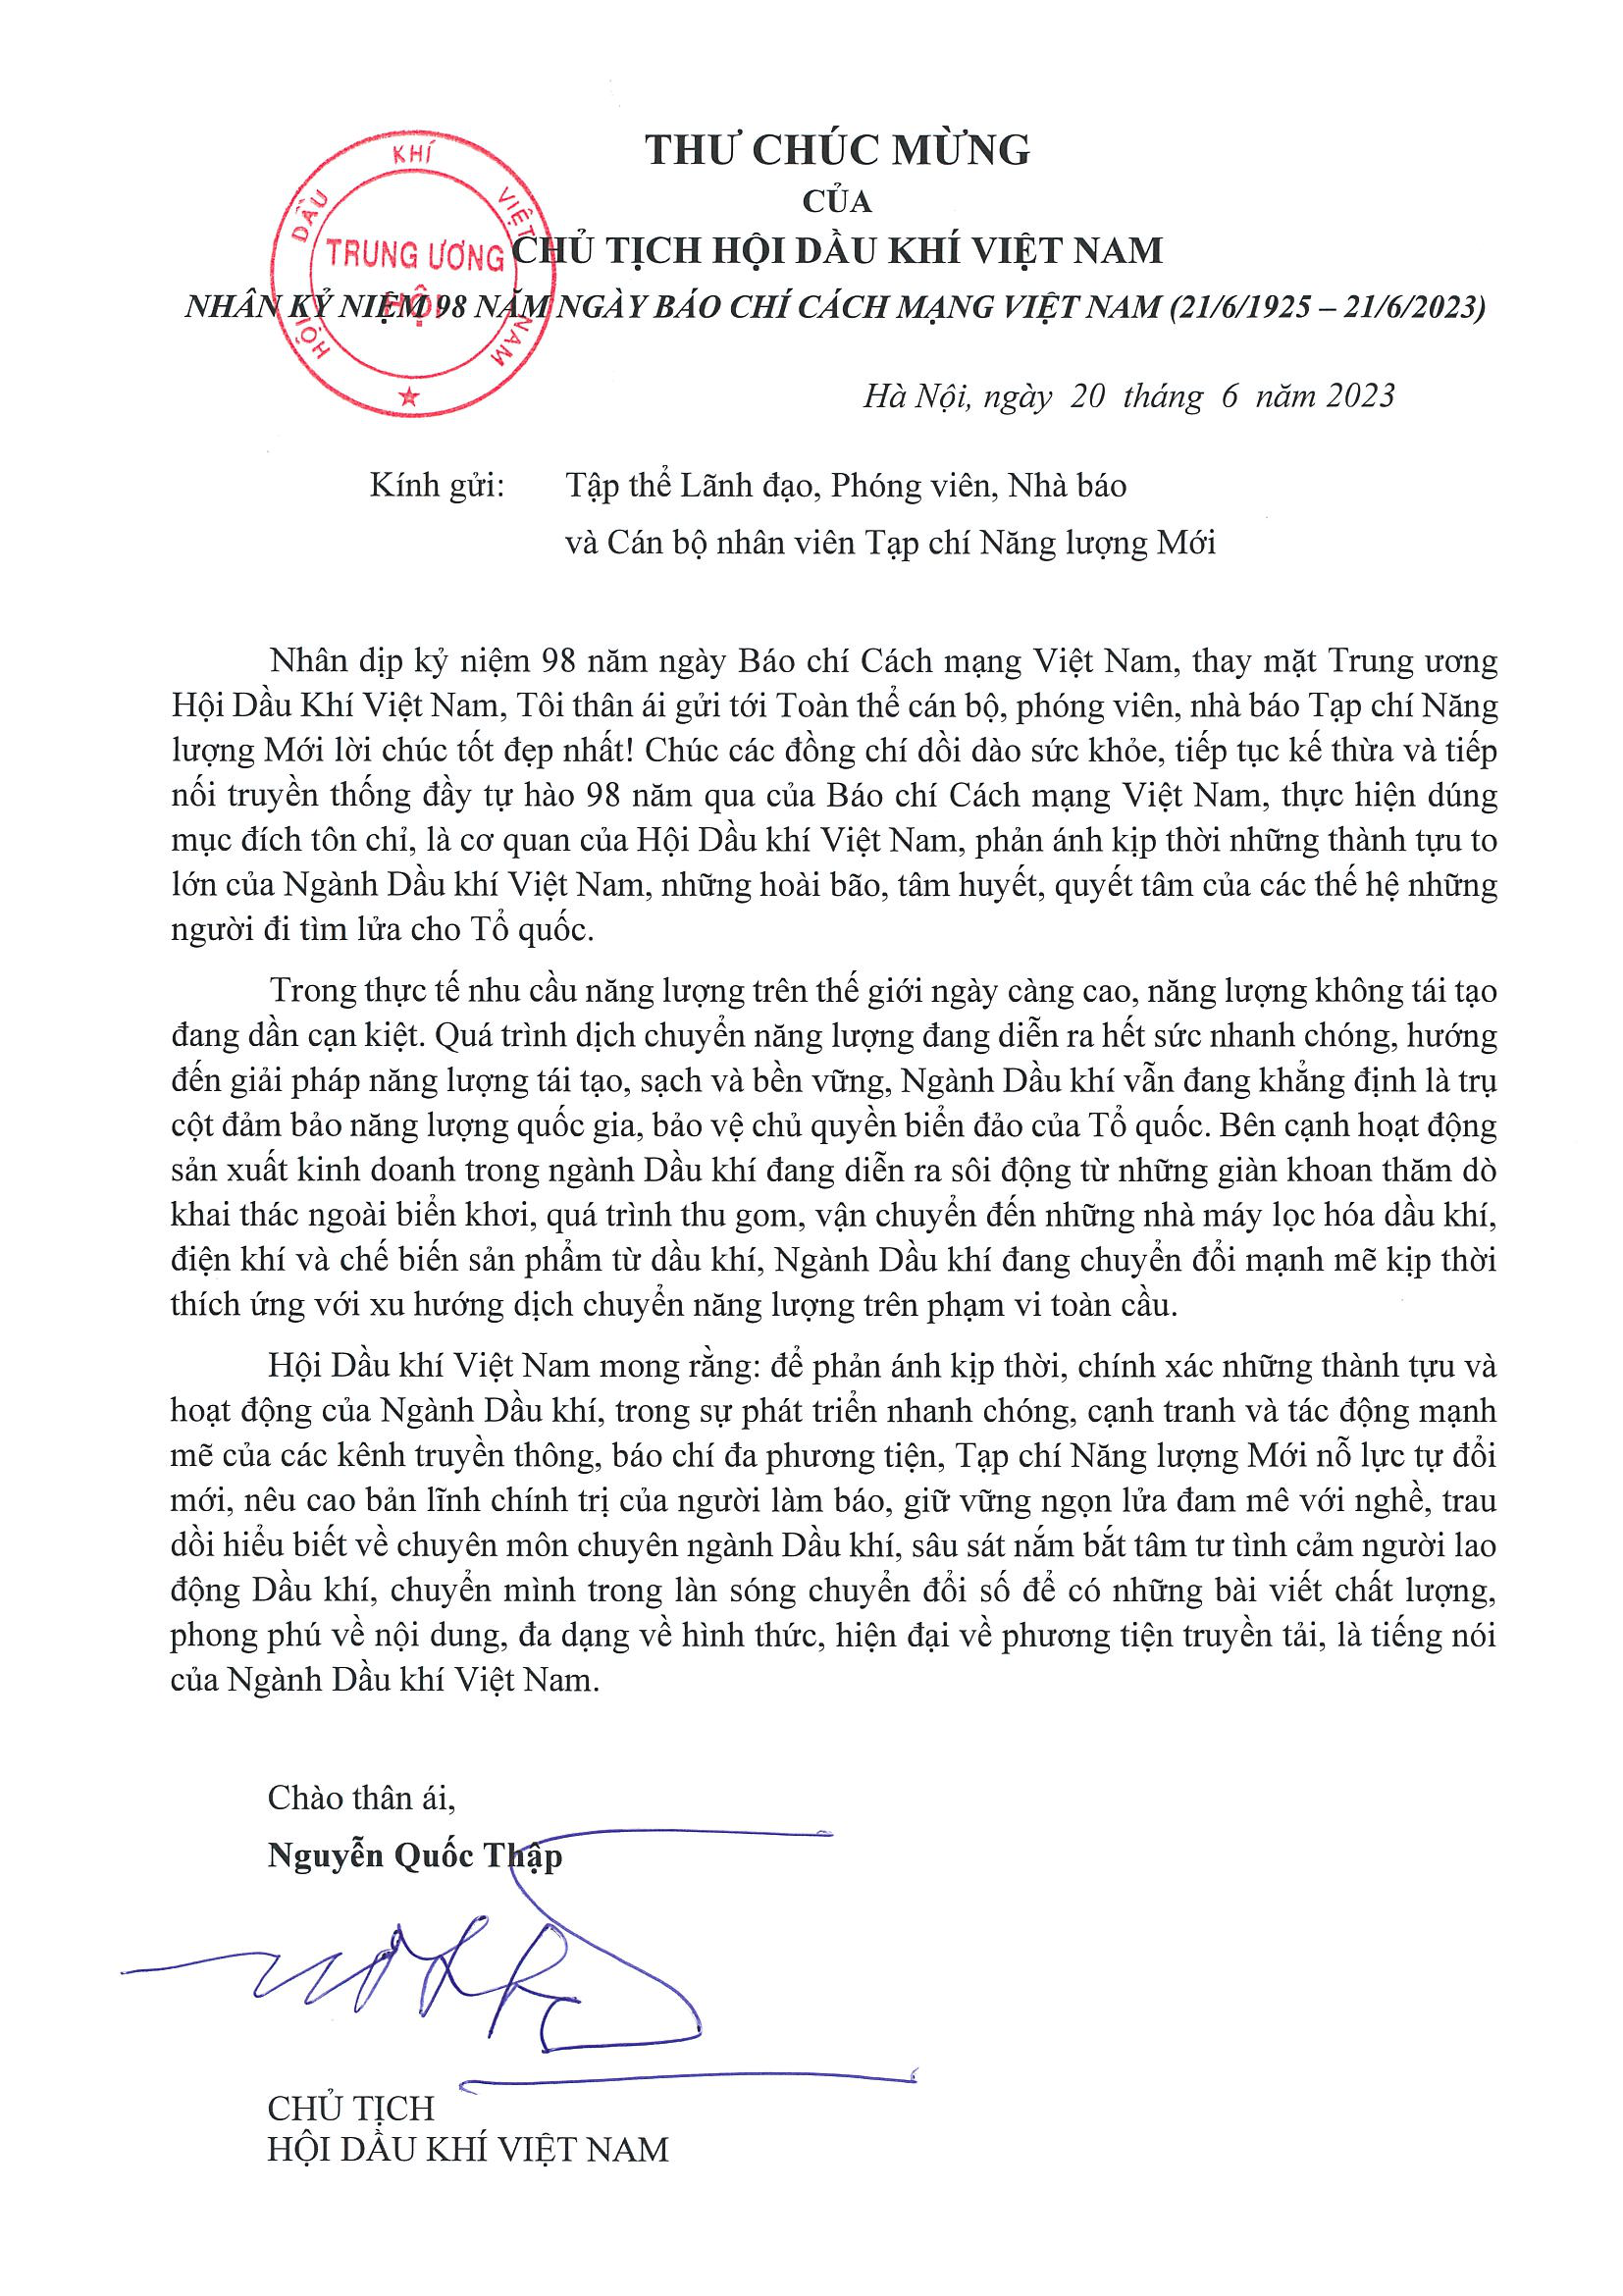 Chủ tịch Hội Dầu khí Việt Nam gửi thư chúc mừng Tạp chí Năng lượng Mới nhân Ngày Báo chí cách mạng Việt Nam